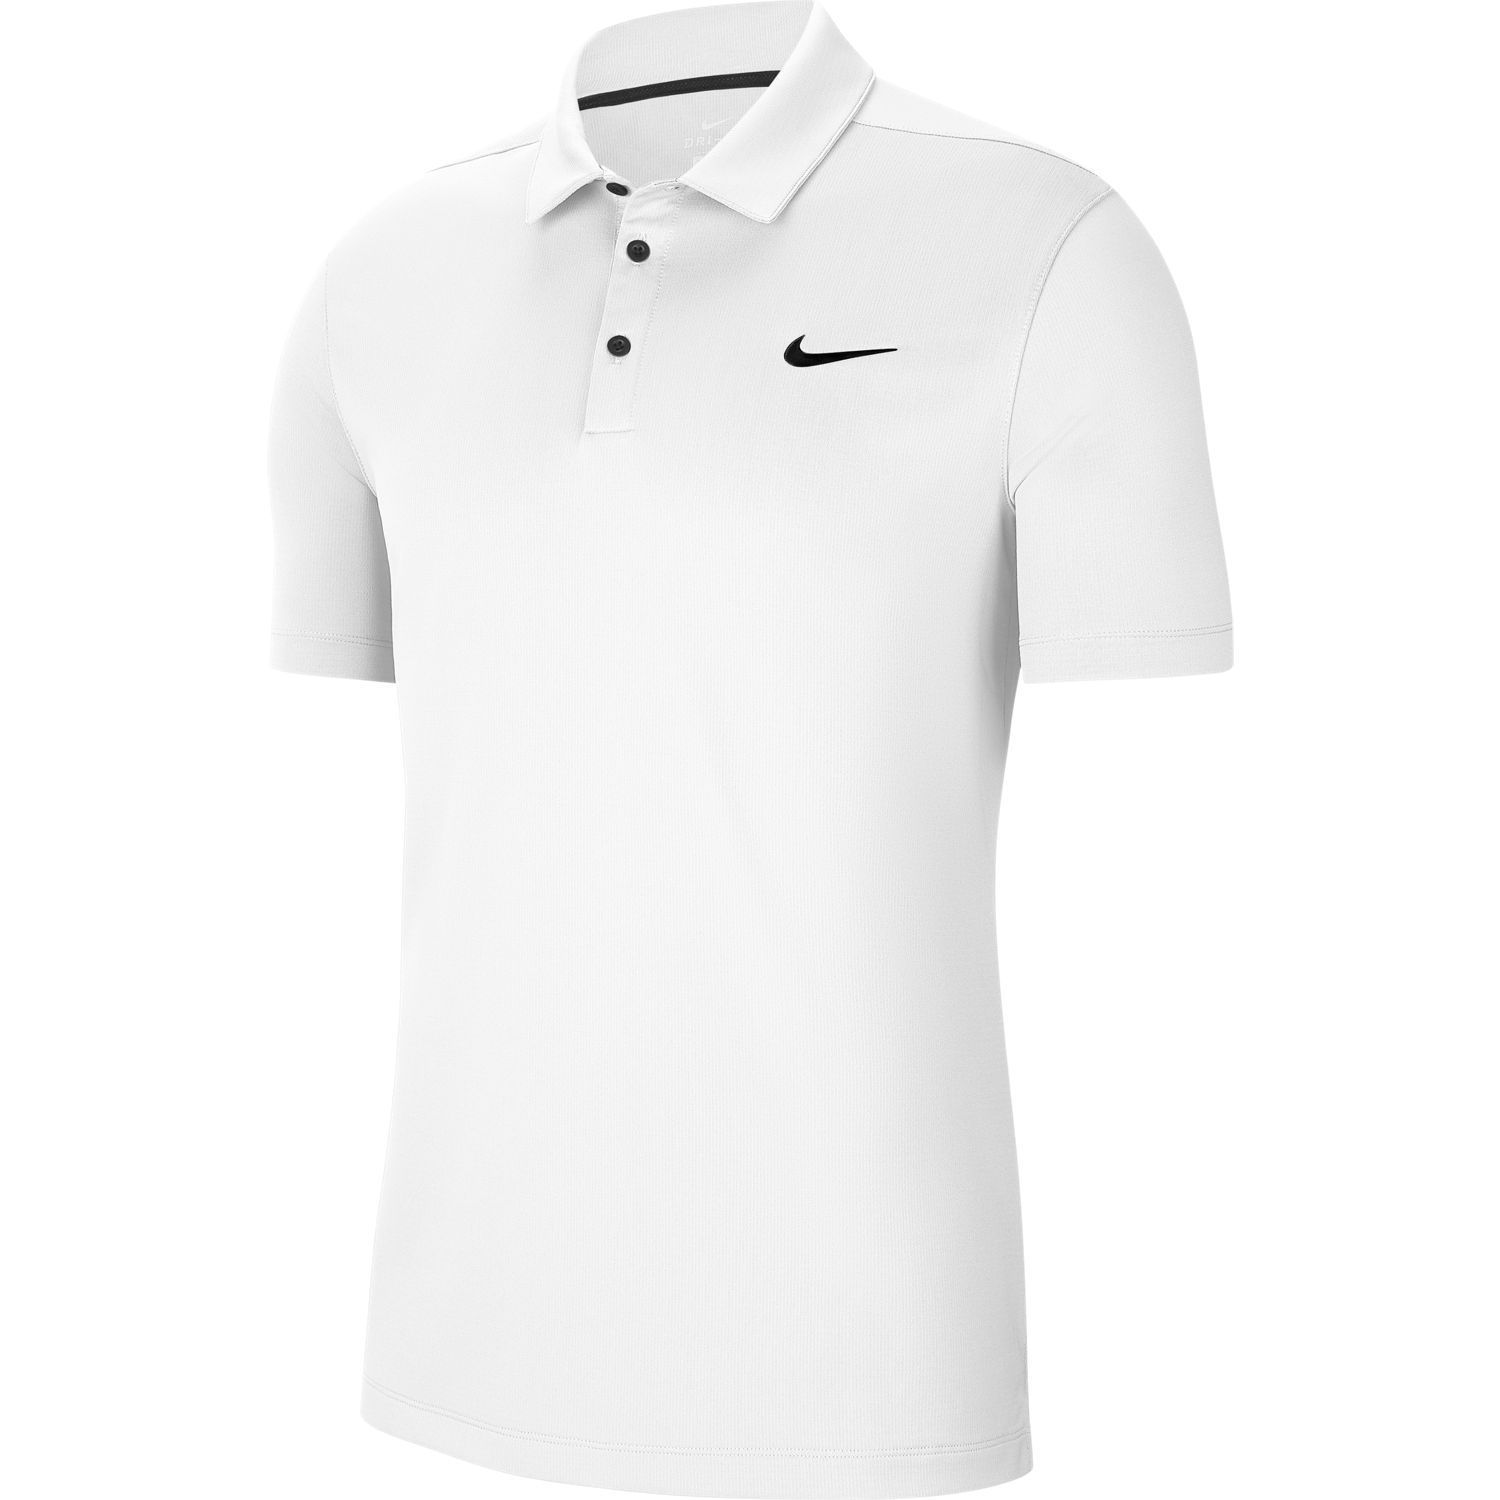 Nike Polo Shirts | Kohl's